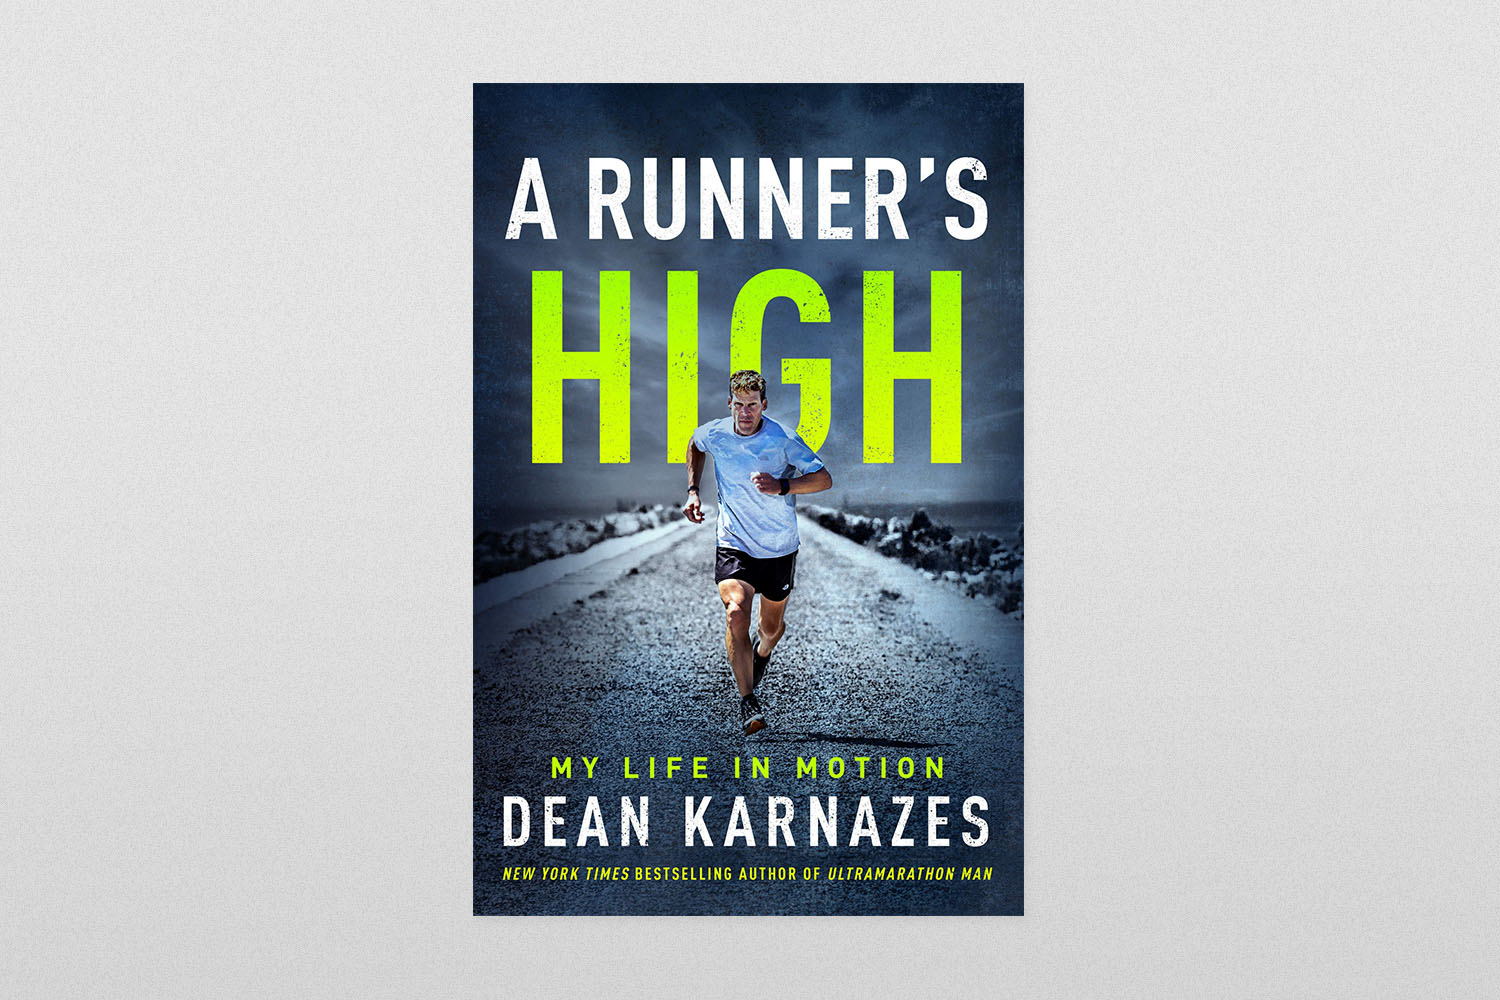 "A Runner's High"